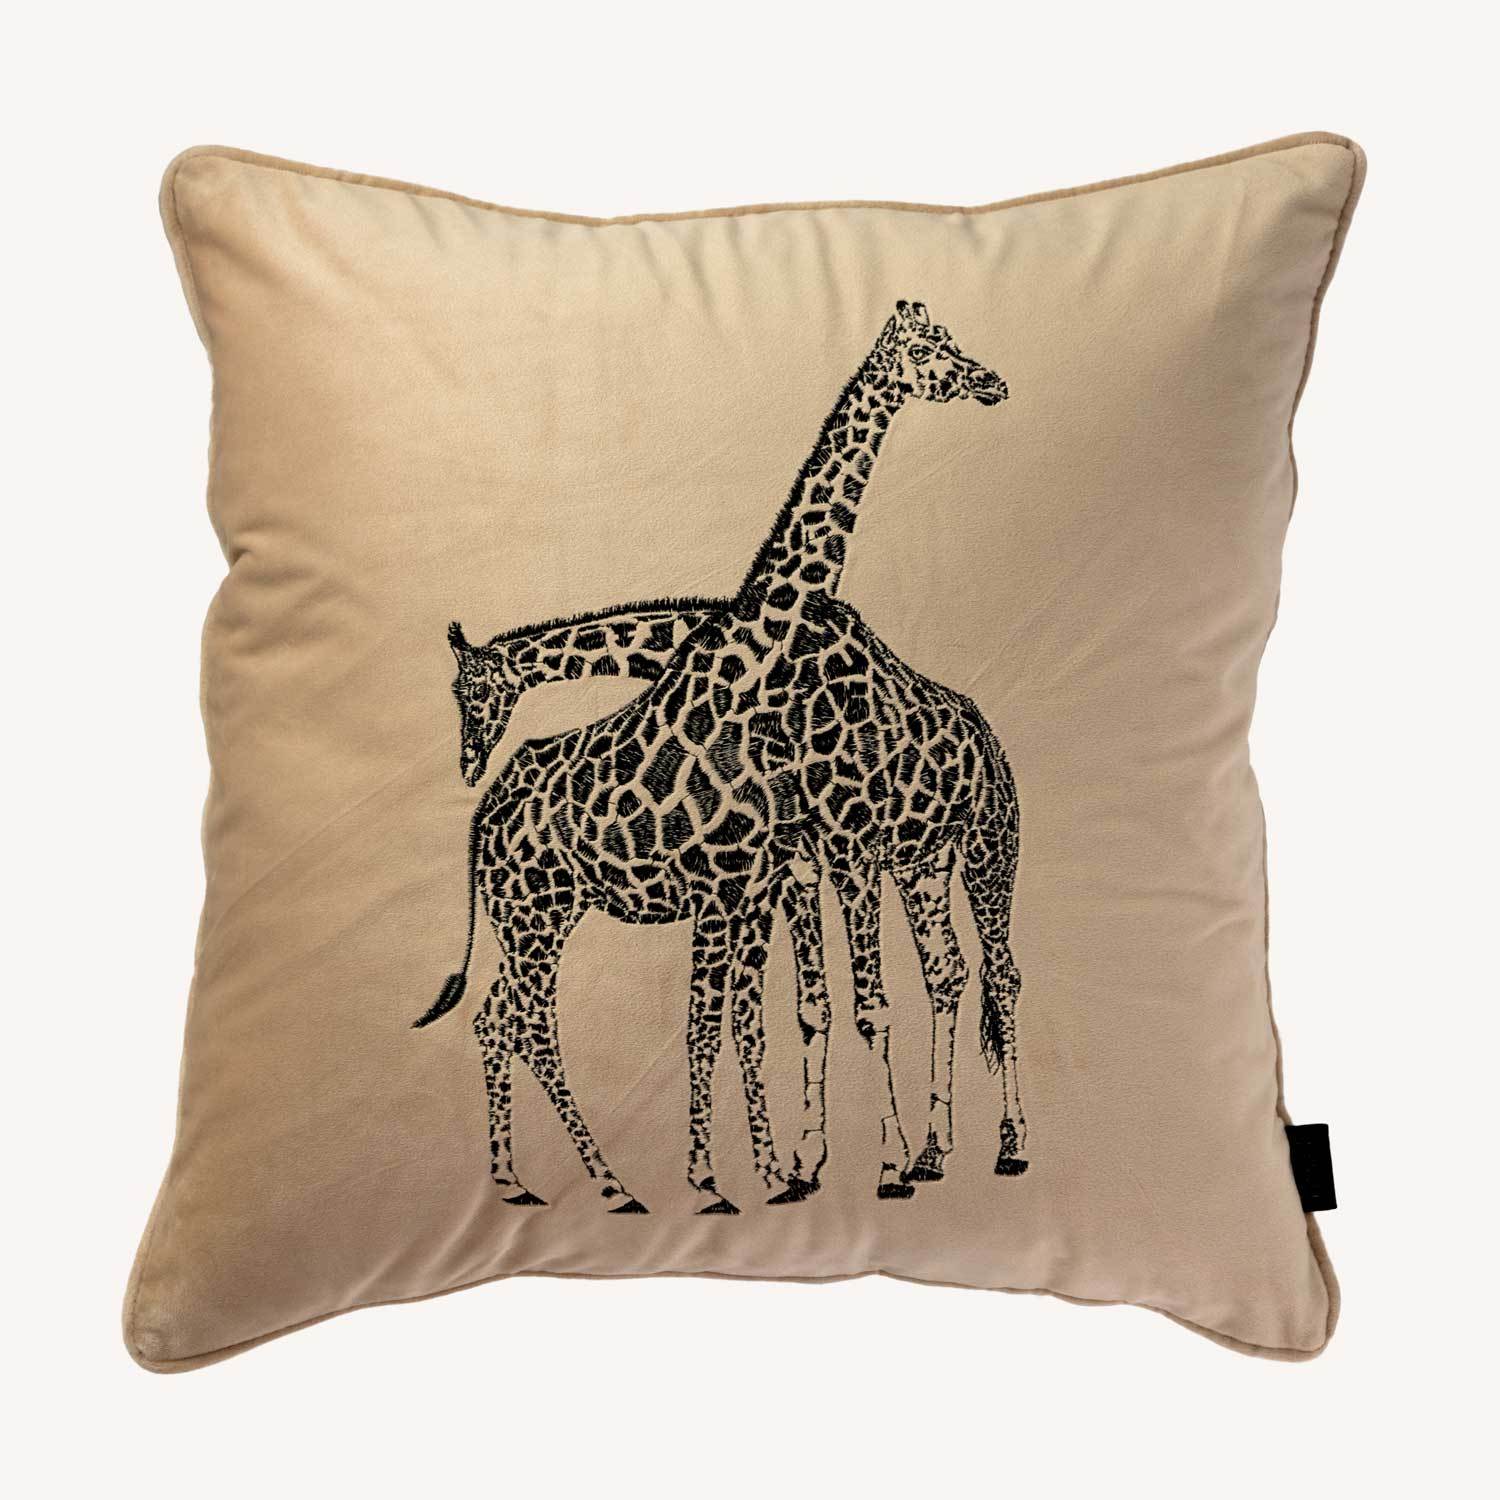 mörk beige kuddfodral i sammet med motiv på en giraff och storlek 45x45cm